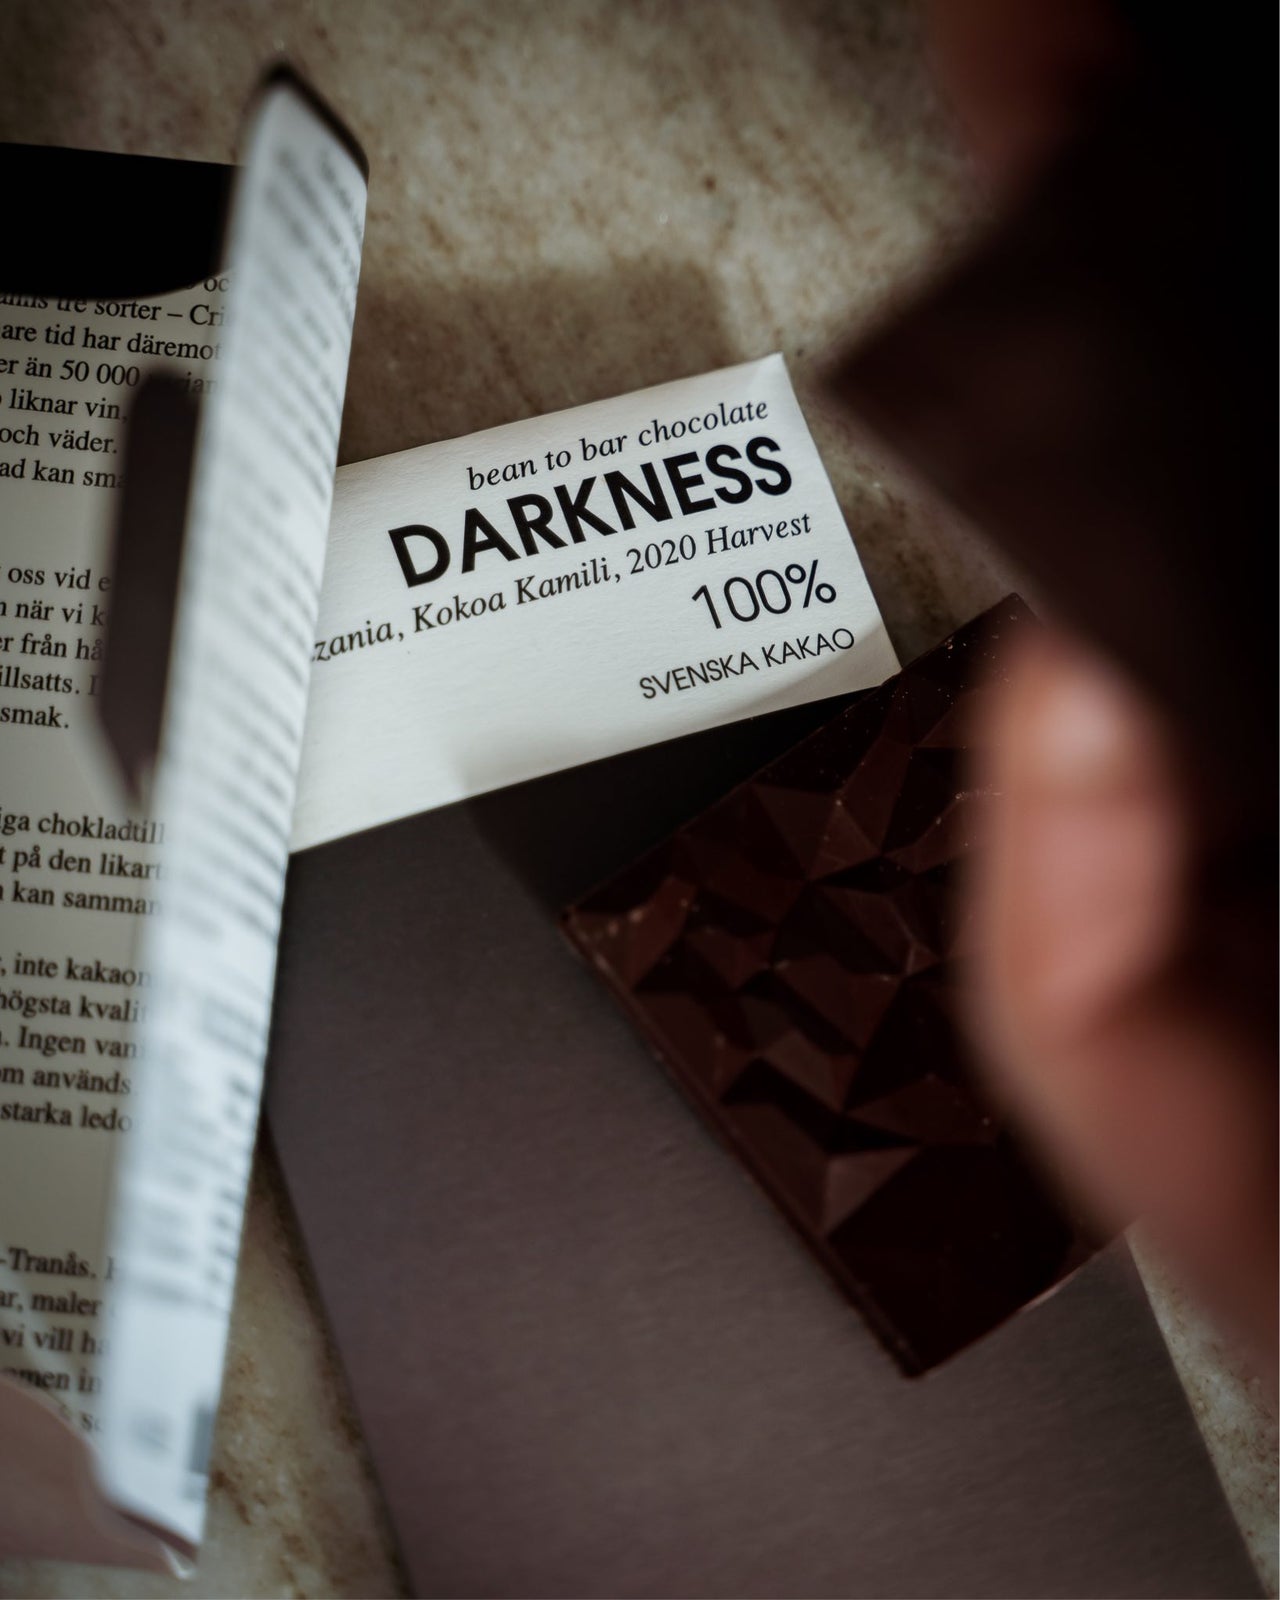 Prenumerera på choklad i ett halvår - mörk choklad 